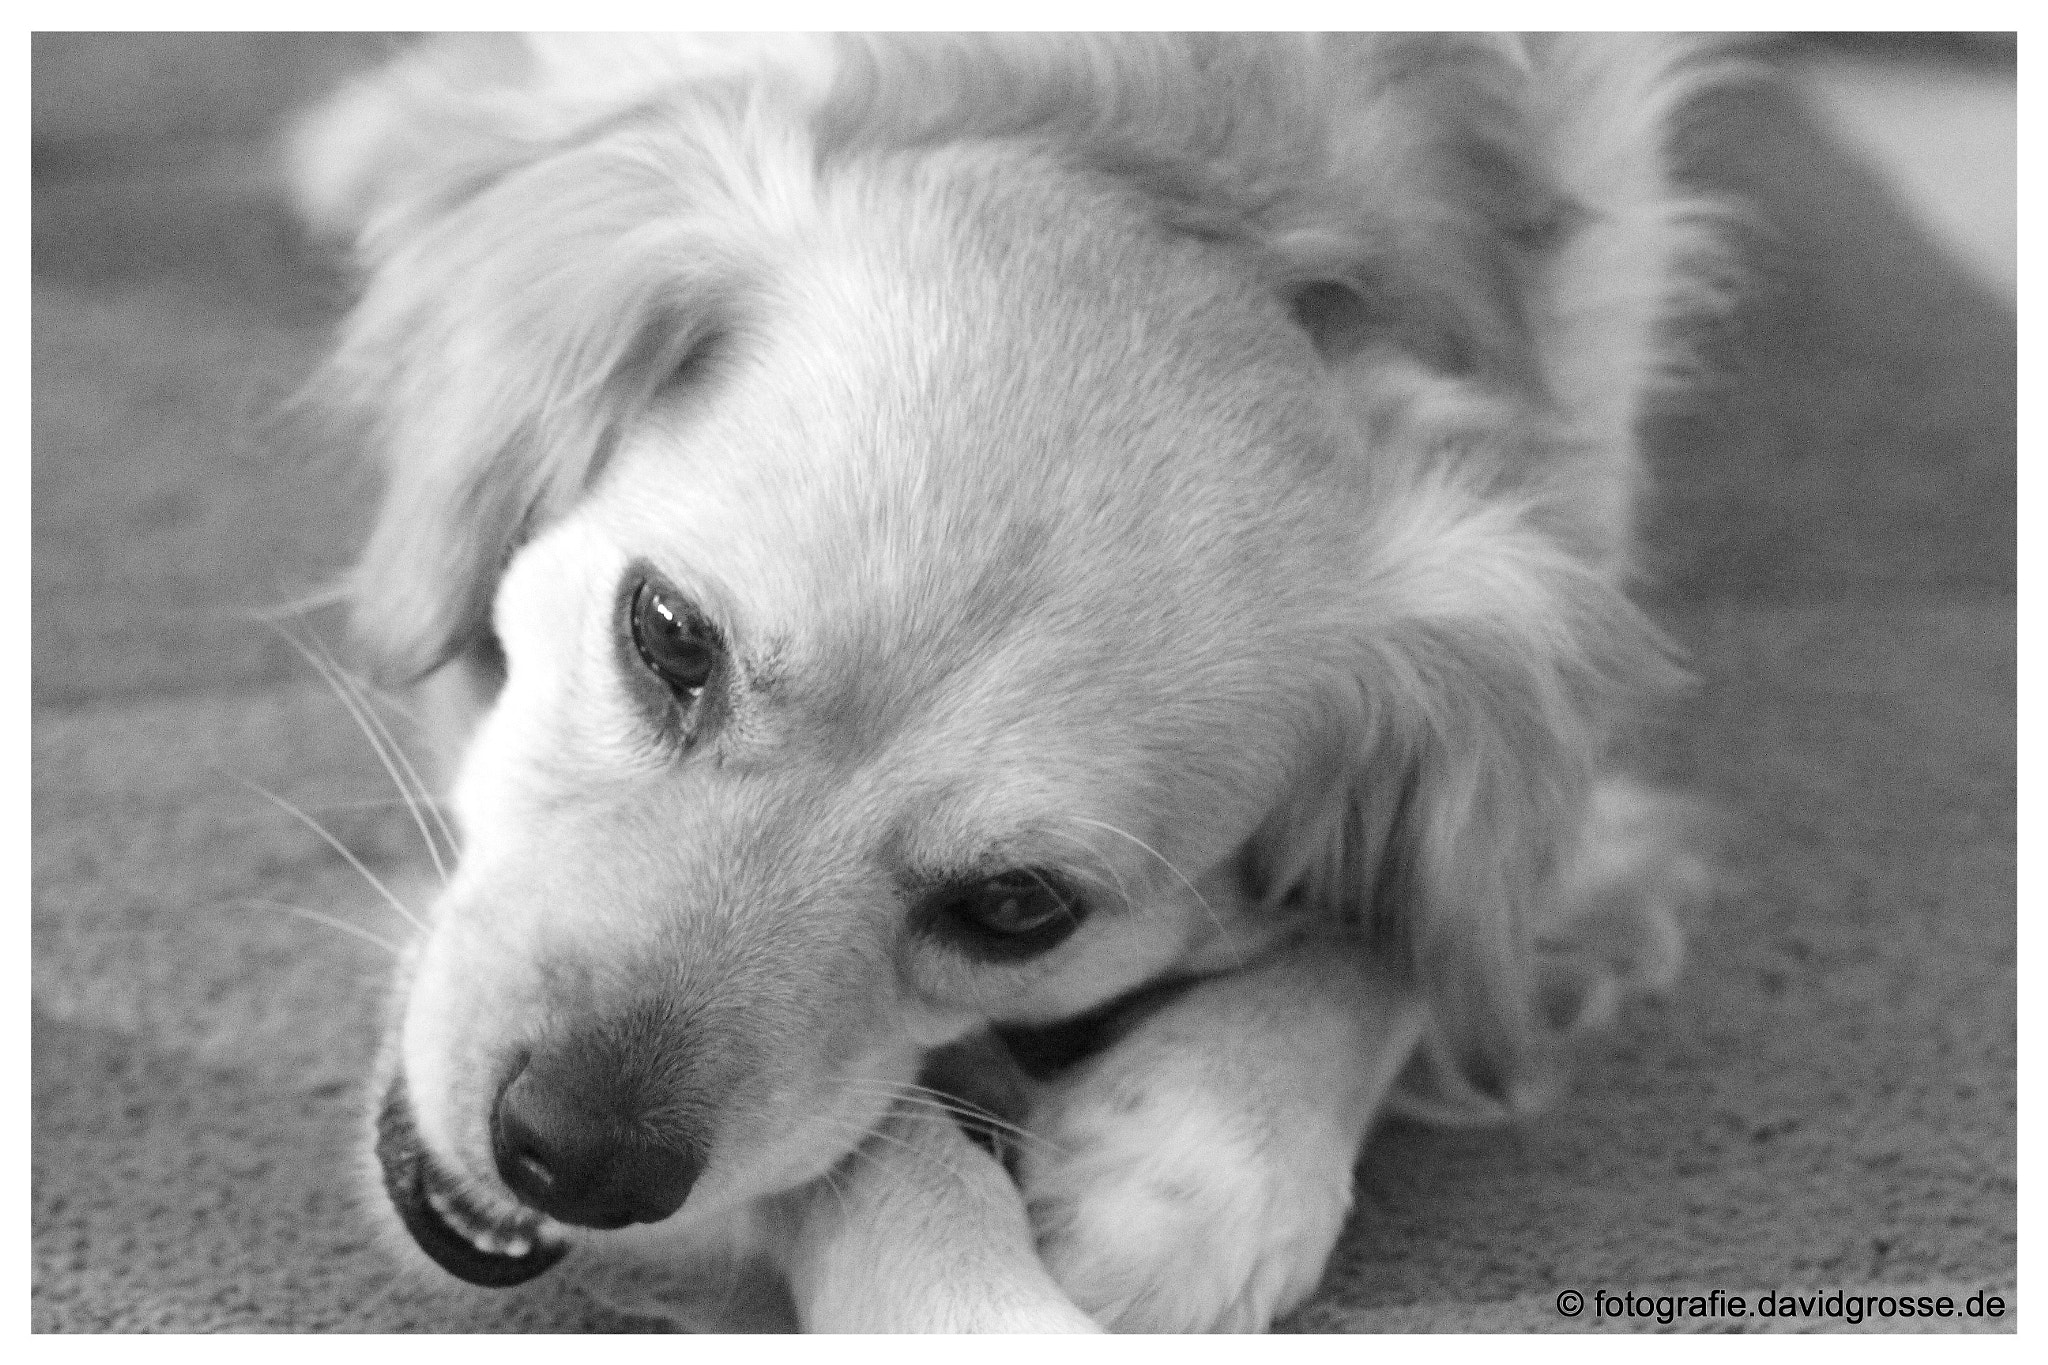 Canon EOS 700D (EOS Rebel T5i / EOS Kiss X7i) + Canon 70-300mm sample photo. The dog jacky three photography